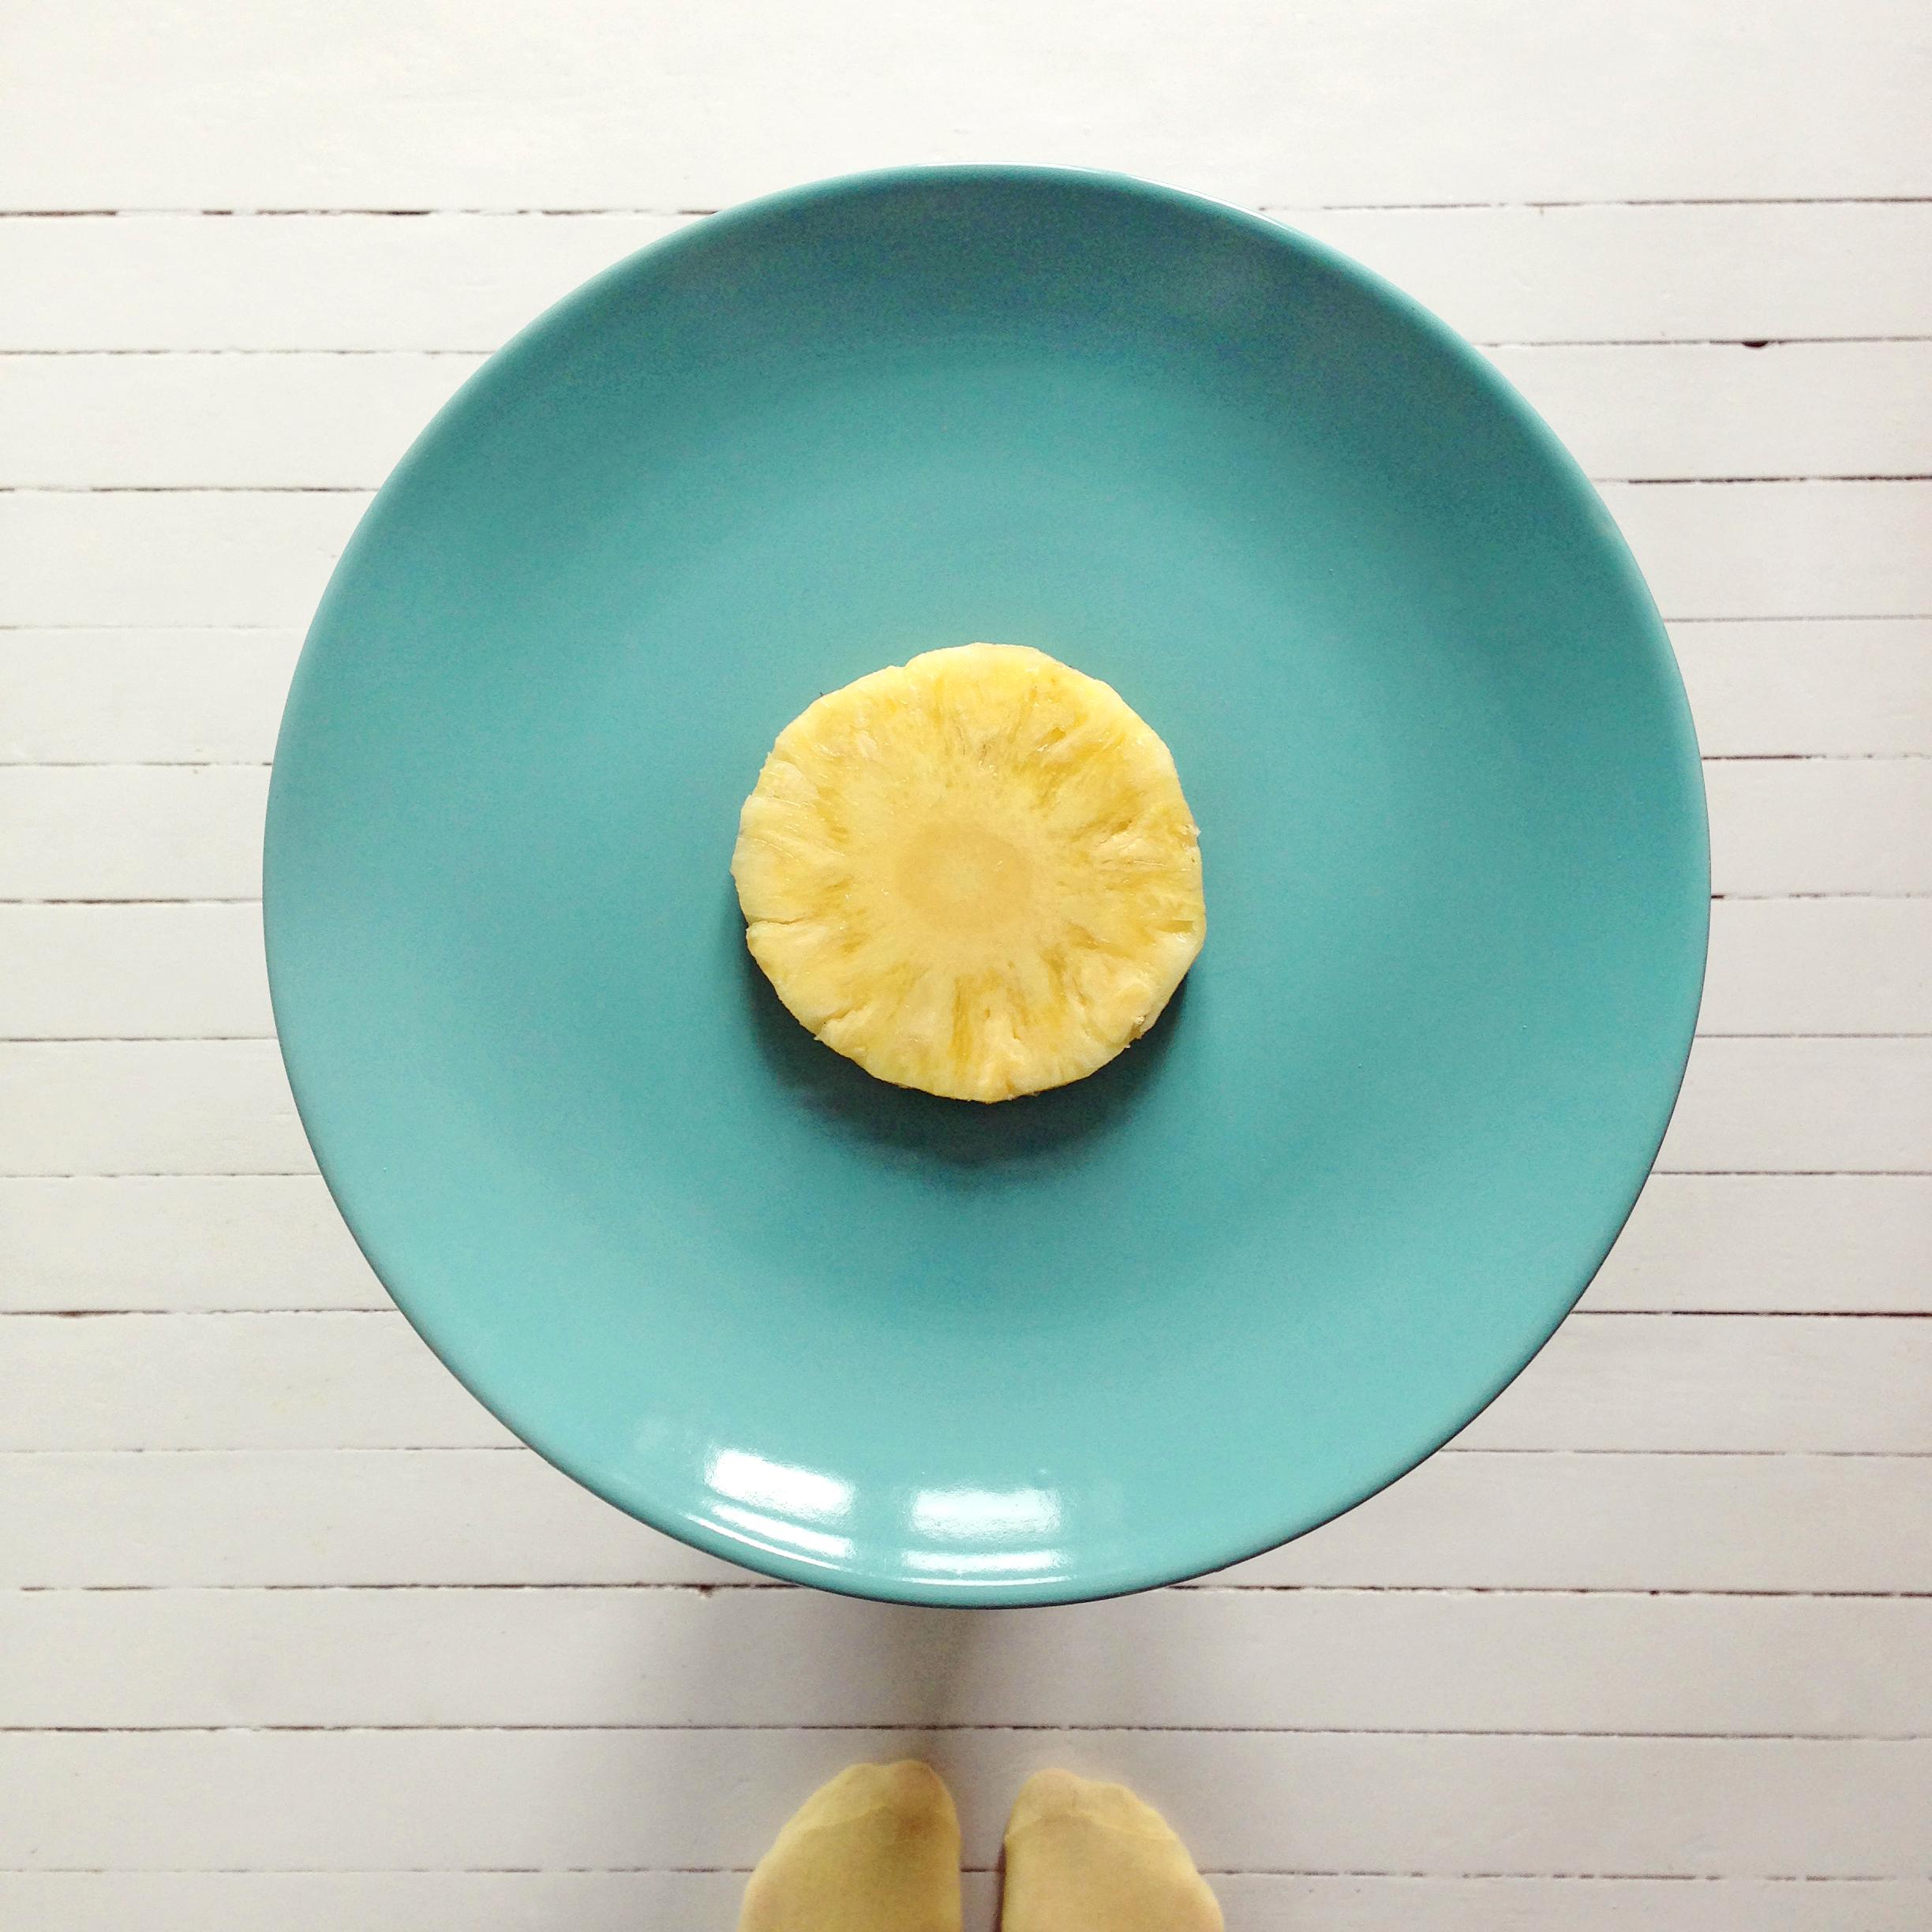 Skjær av to skiver ananas, legg den ene midt på en tallerken. Du kan gjerne kutte vekk det harde midtstykket slik at det blir en vanlig ring.